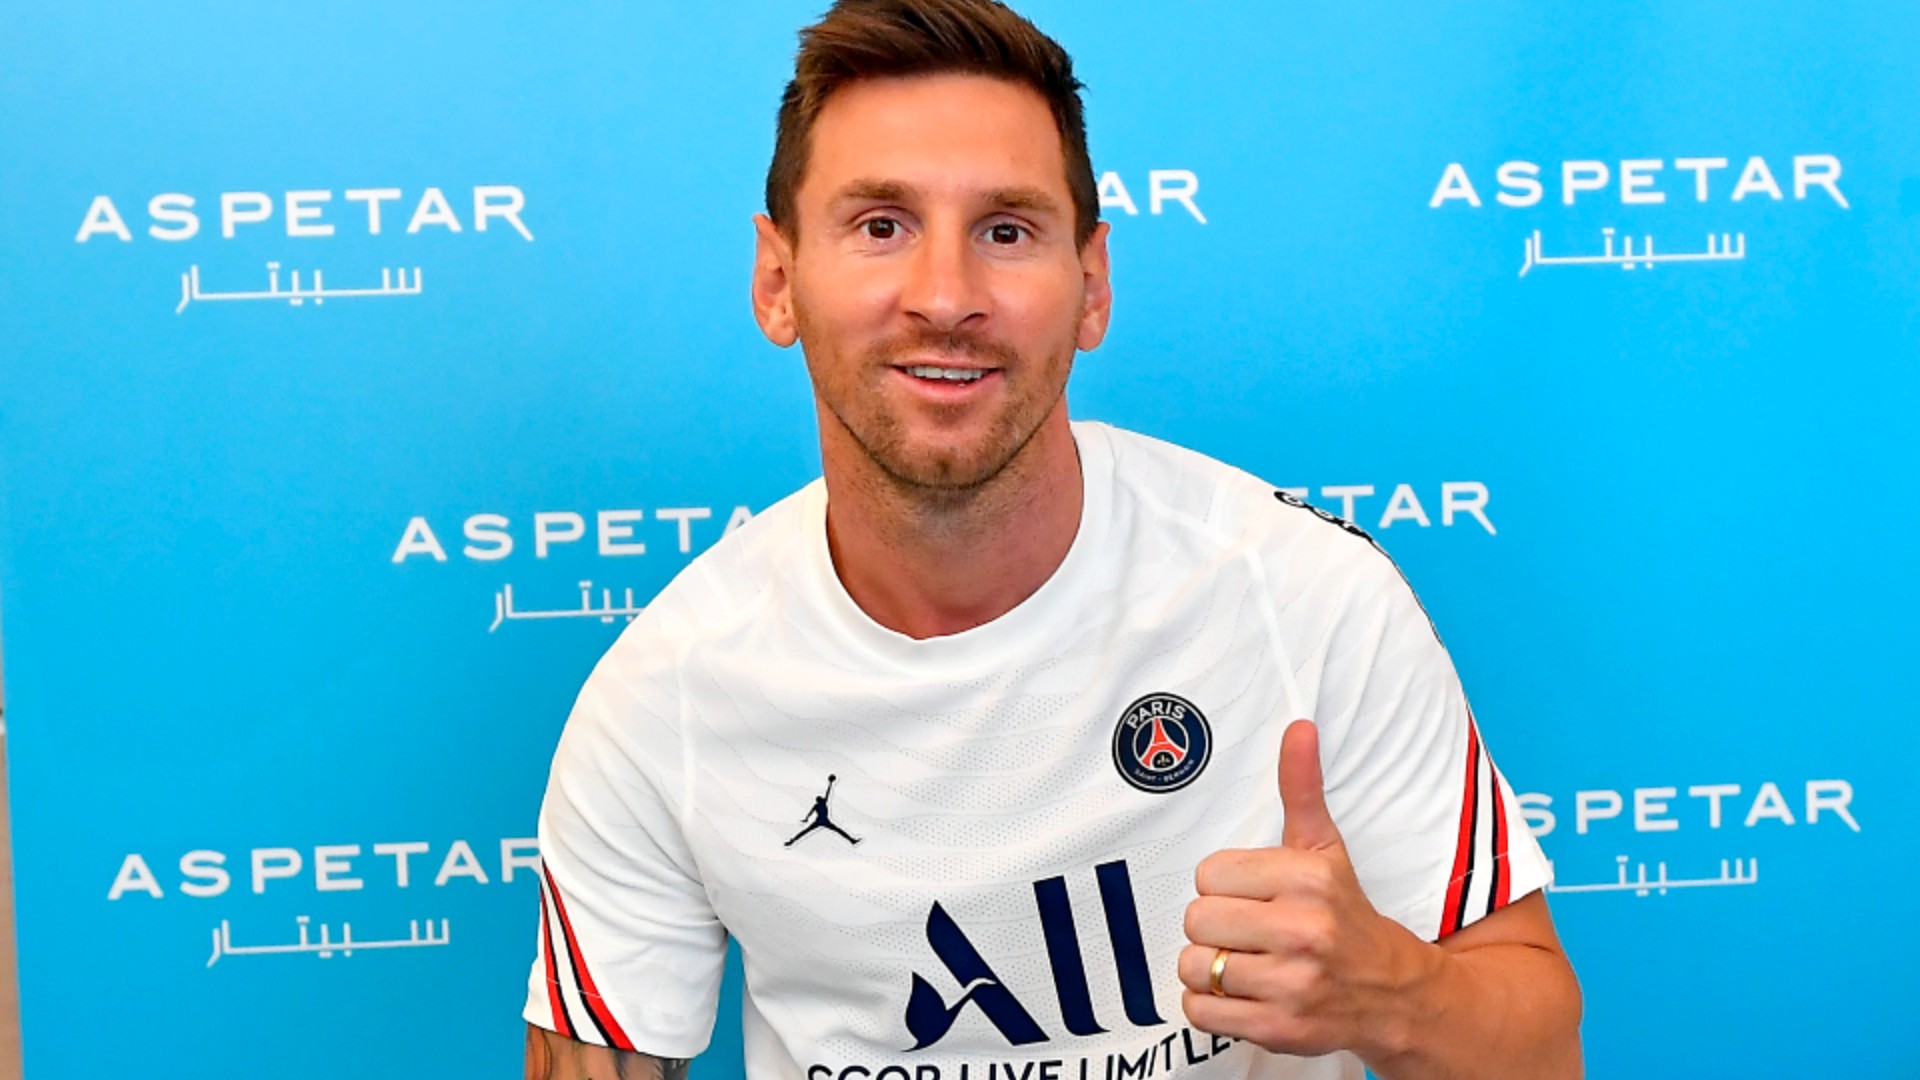 Lionel Messi's new team: PSG sign superstar after Barcelona's departure